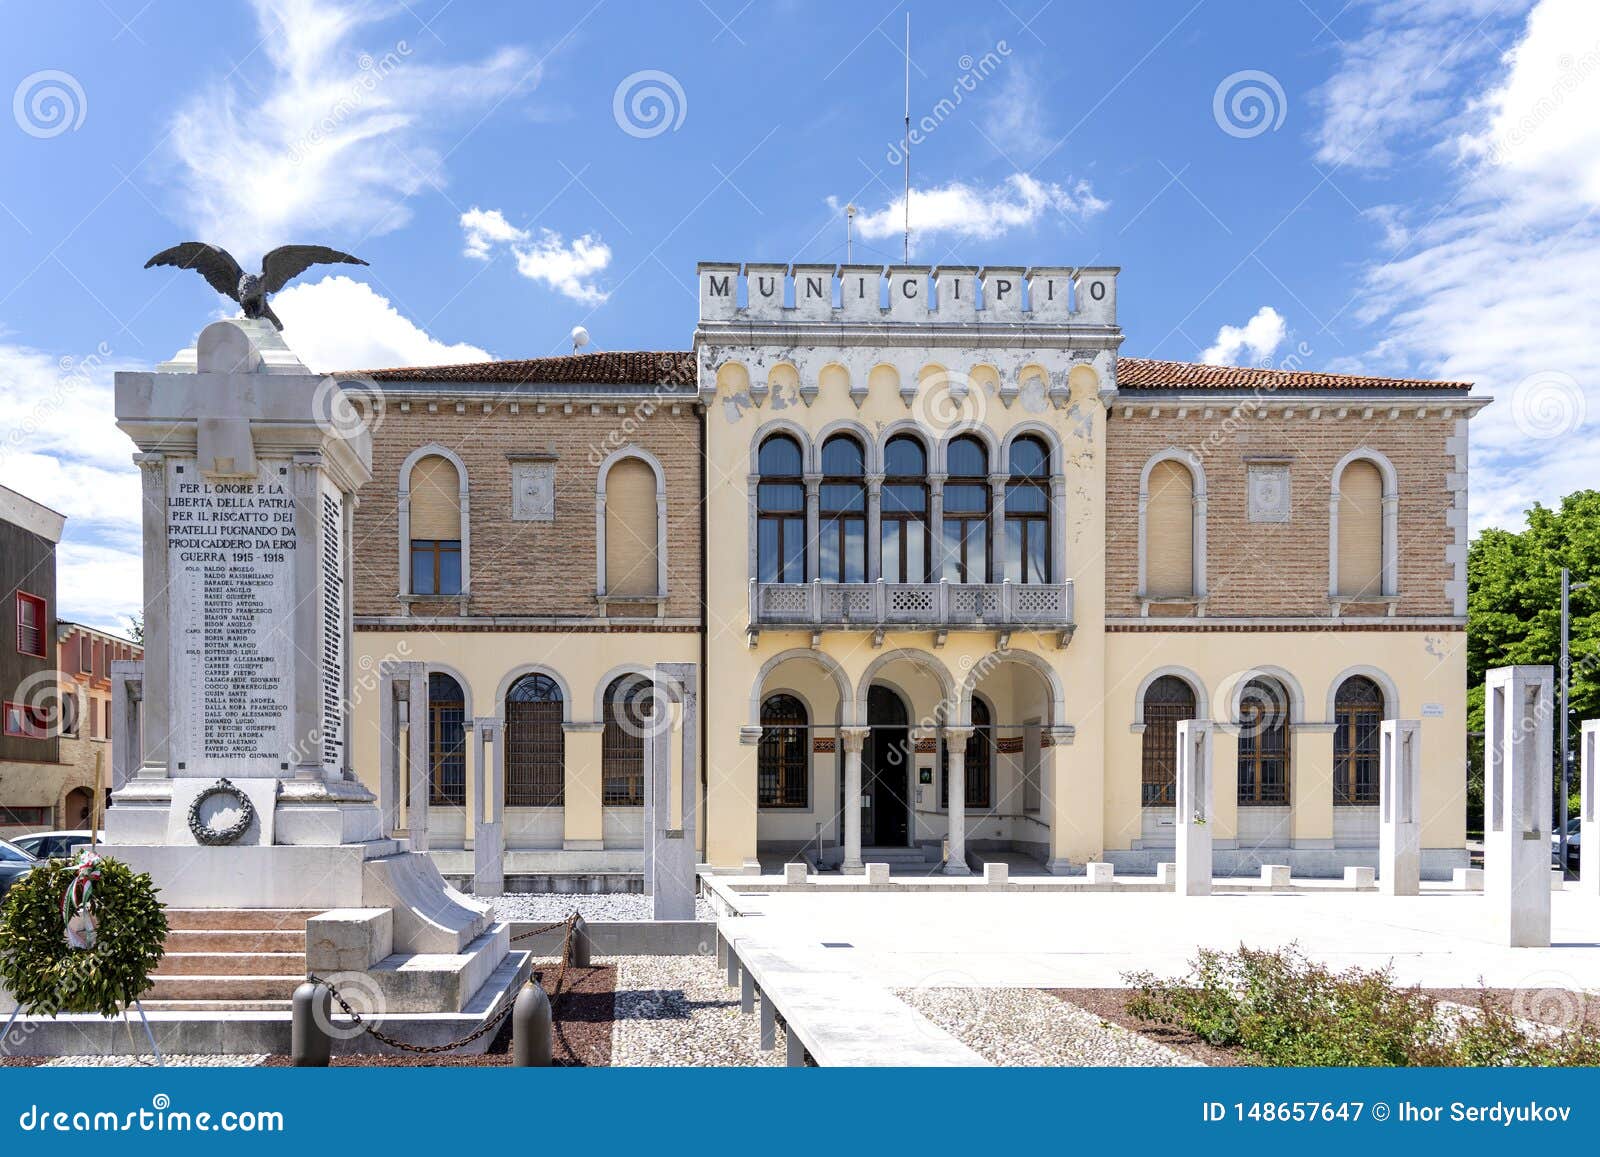 ceggia, san dona di piave, venice - municipality of ceggia. italian city hall. city hall in ceggia near venice in italy - immagine